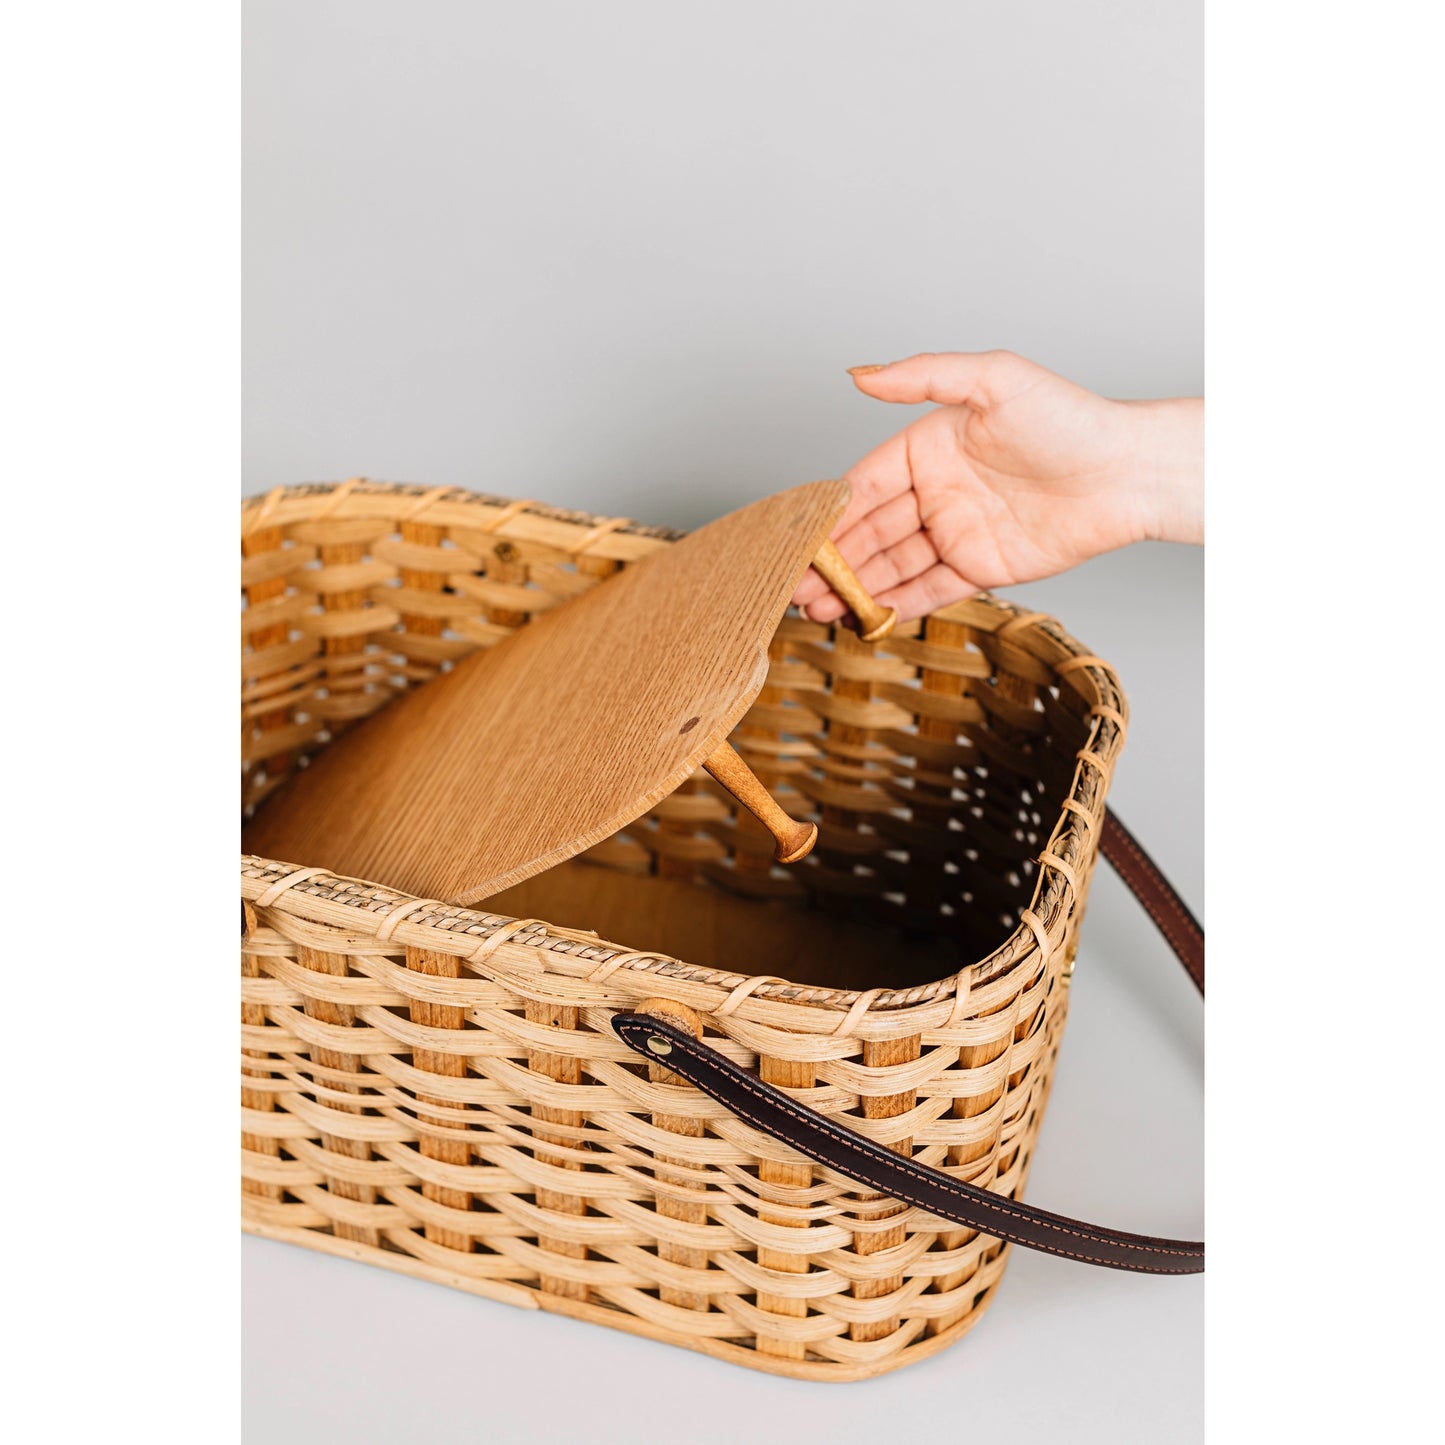 Amish-made Picnic Basket